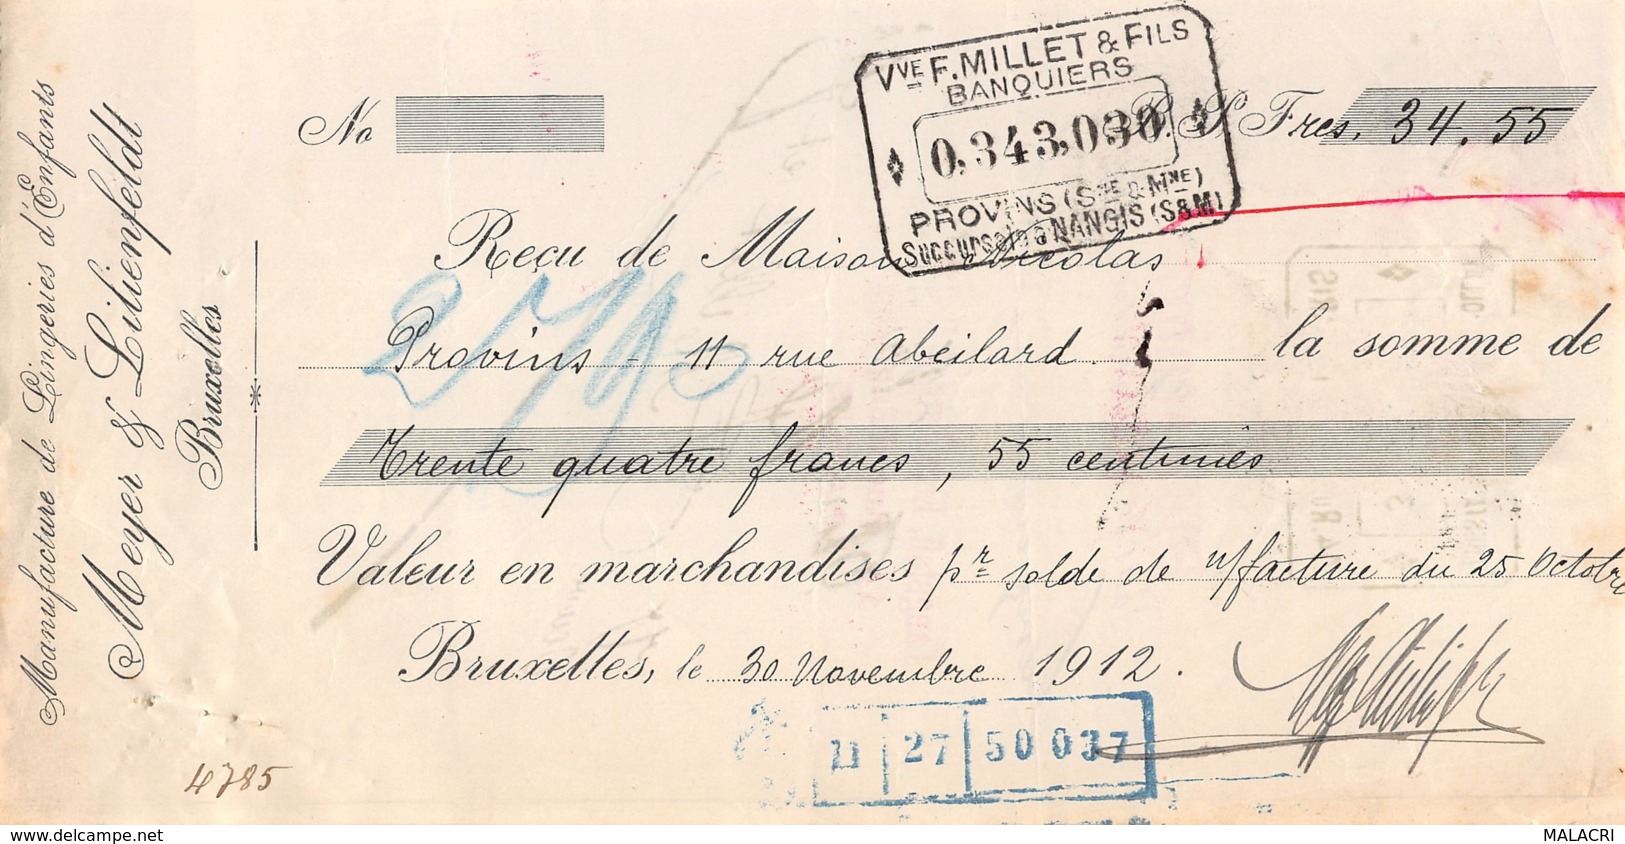 13   -0237   1912   MEYER & LILIENFELDT A BRUXELLES - MAISON NICOLAS A PROVINS-13   0237 - Lettres De Change